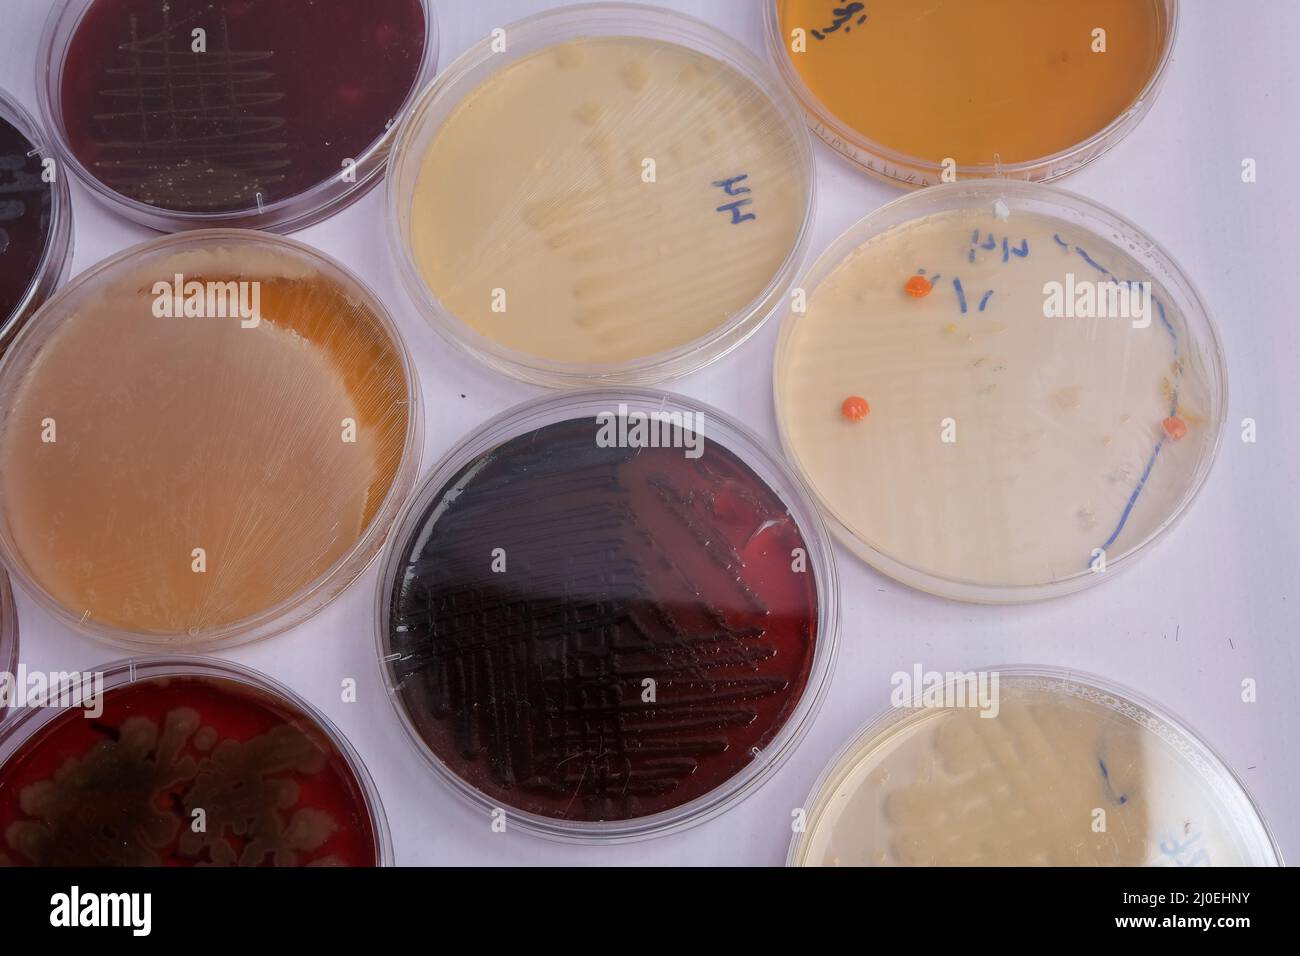 la collecte de plaques de culture contient la croissance de micro-organismes sur différents milieux de culture Banque D'Images